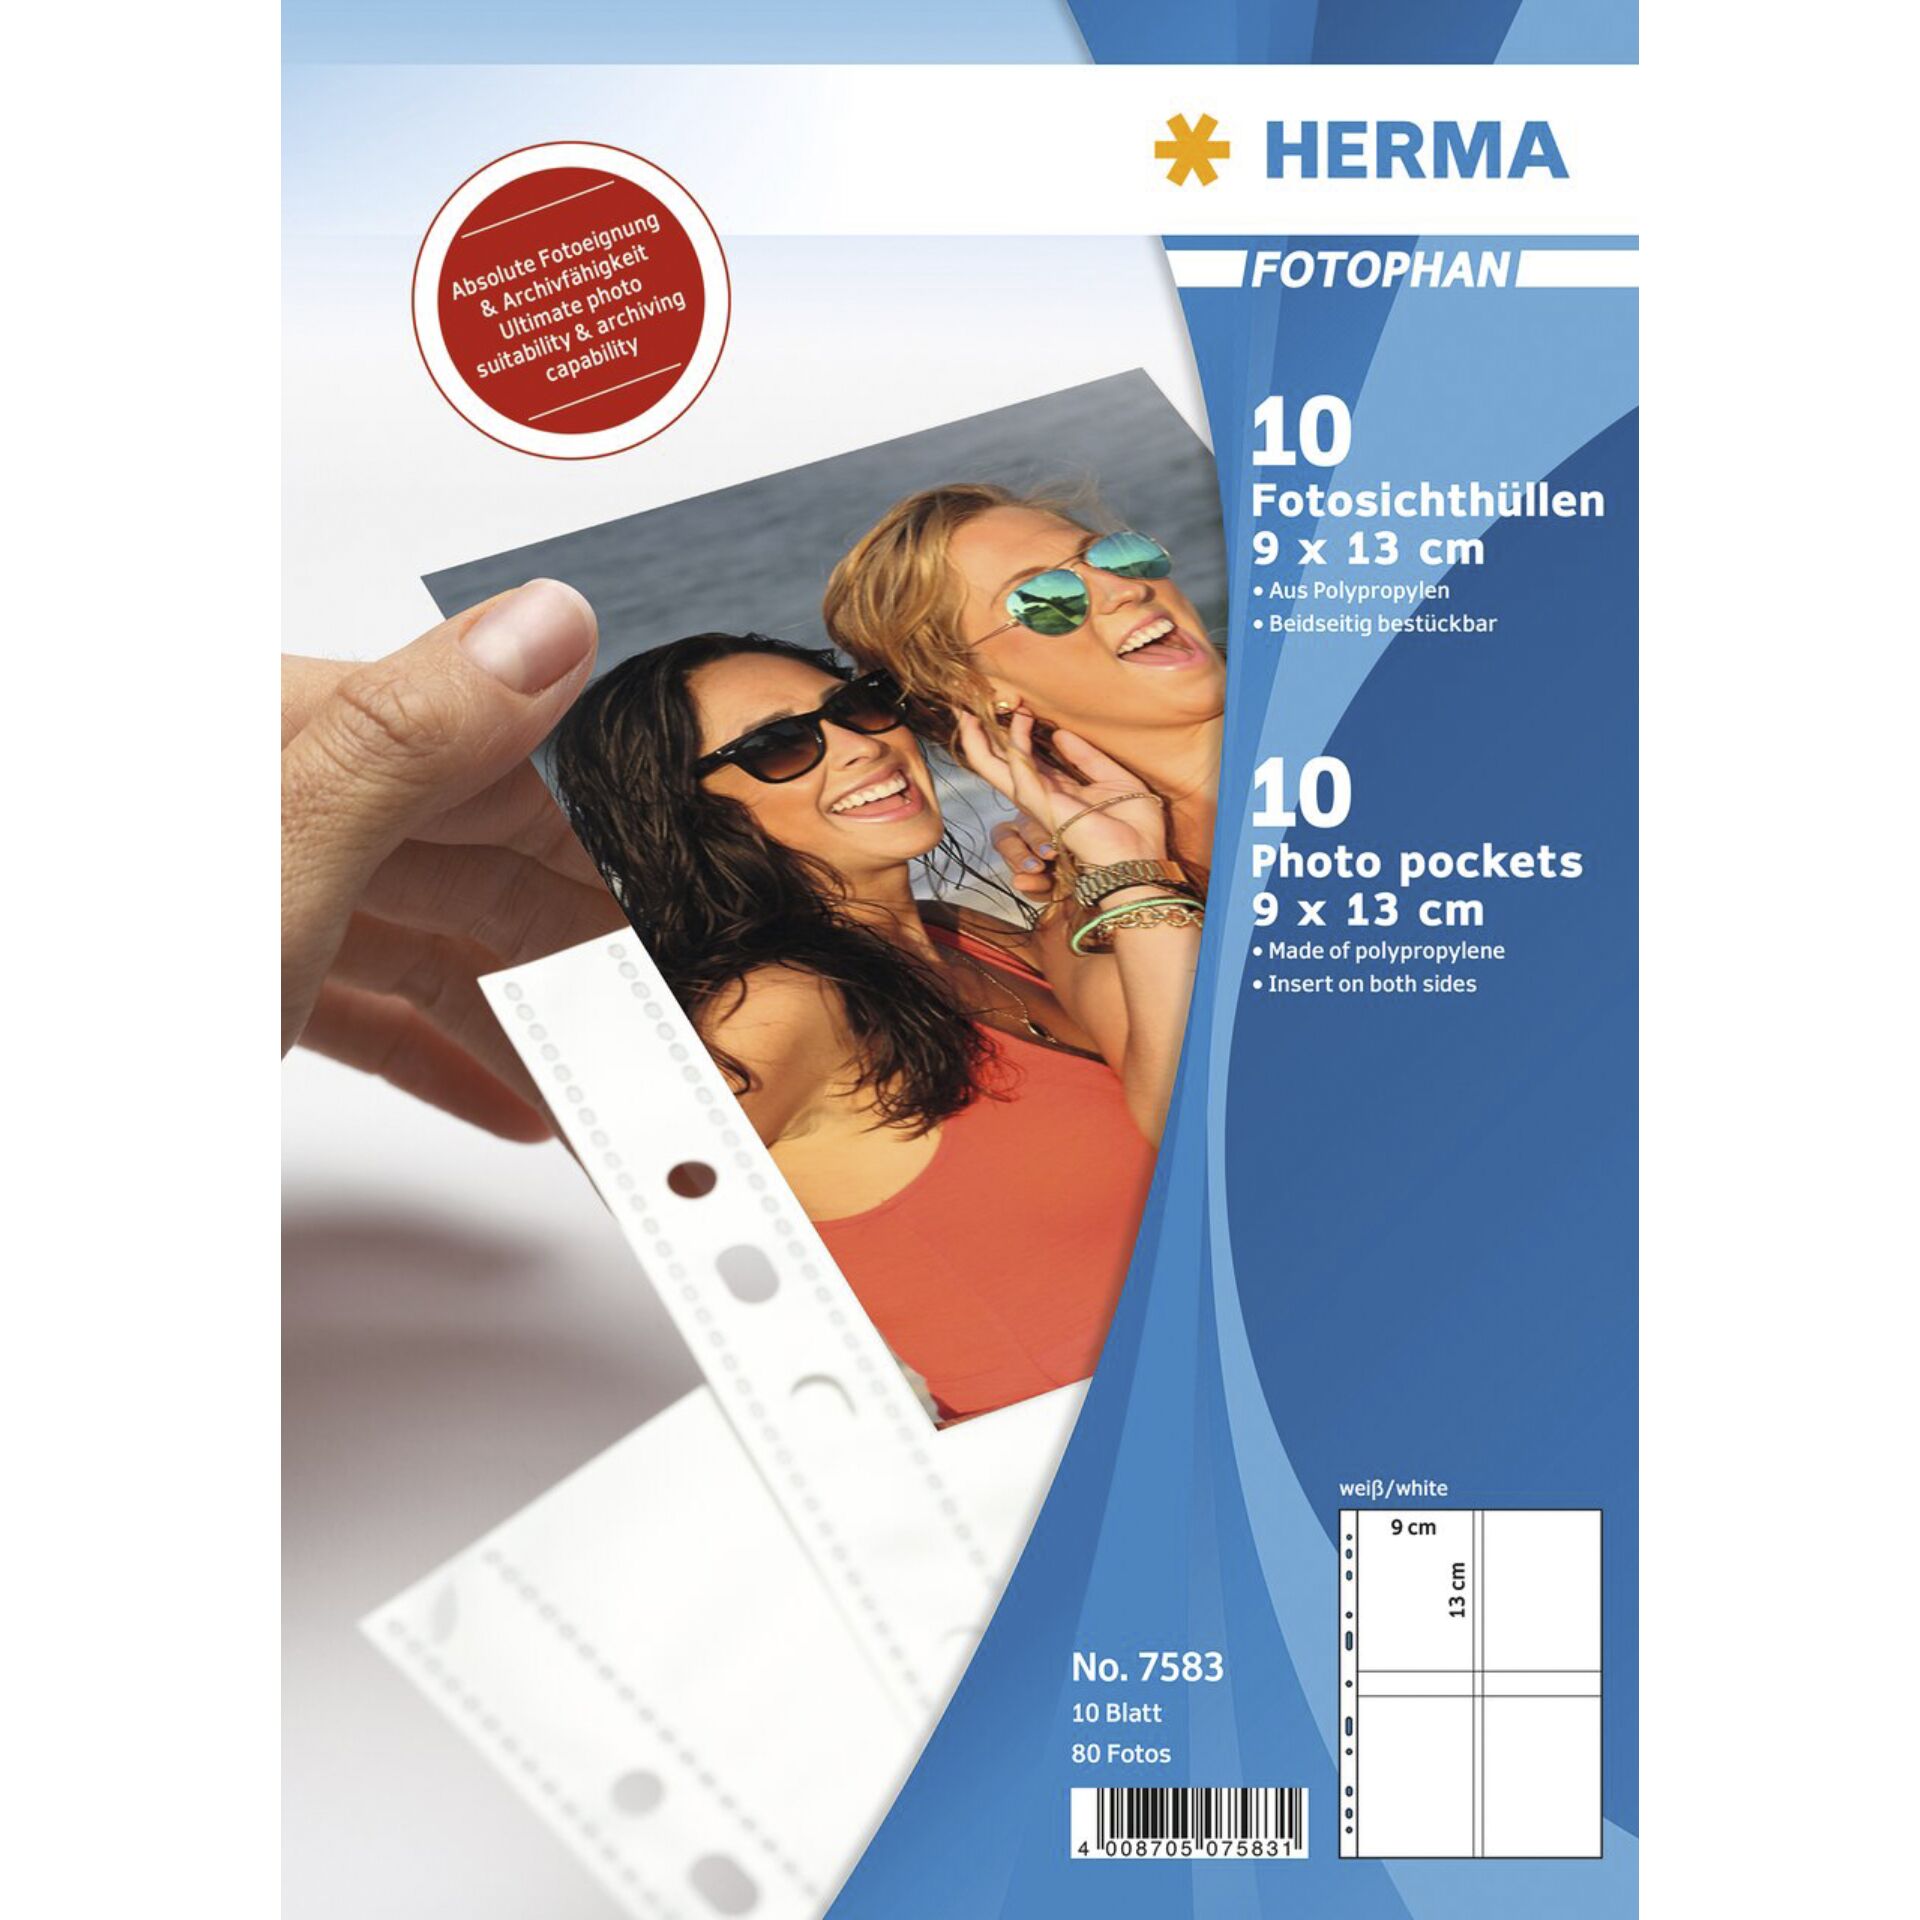 Herma fotophan  9x13 hoch 10 Blatt                    7583